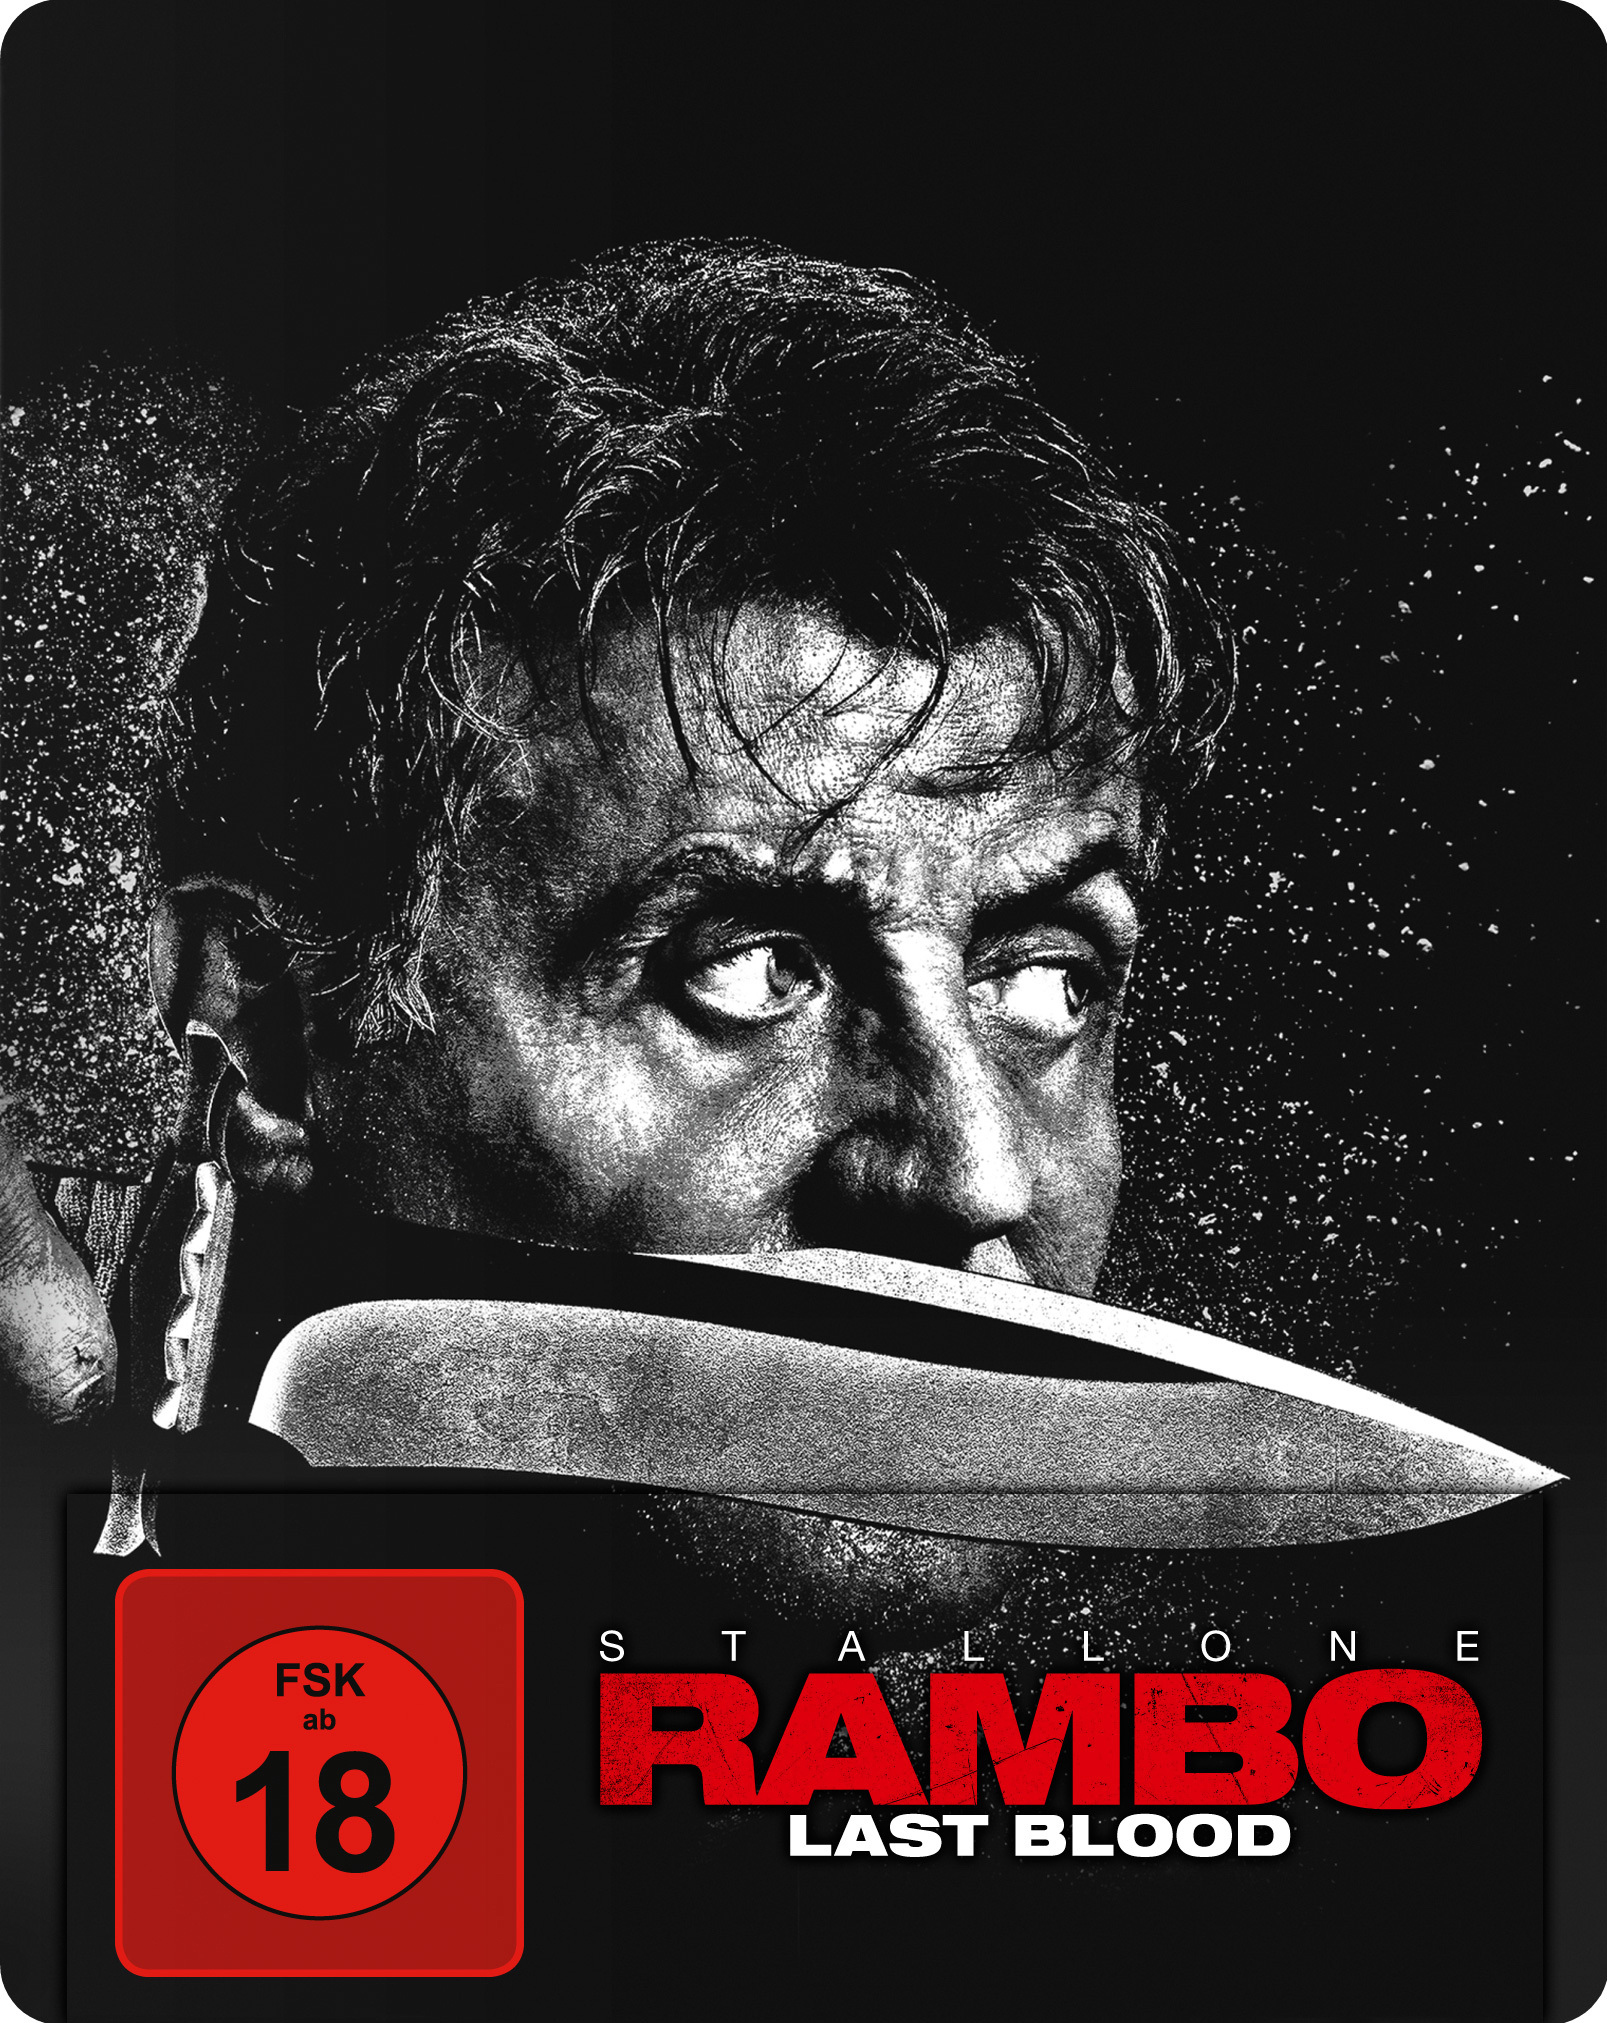 Rambo: Last Blood Blu-ray (Steelbook)